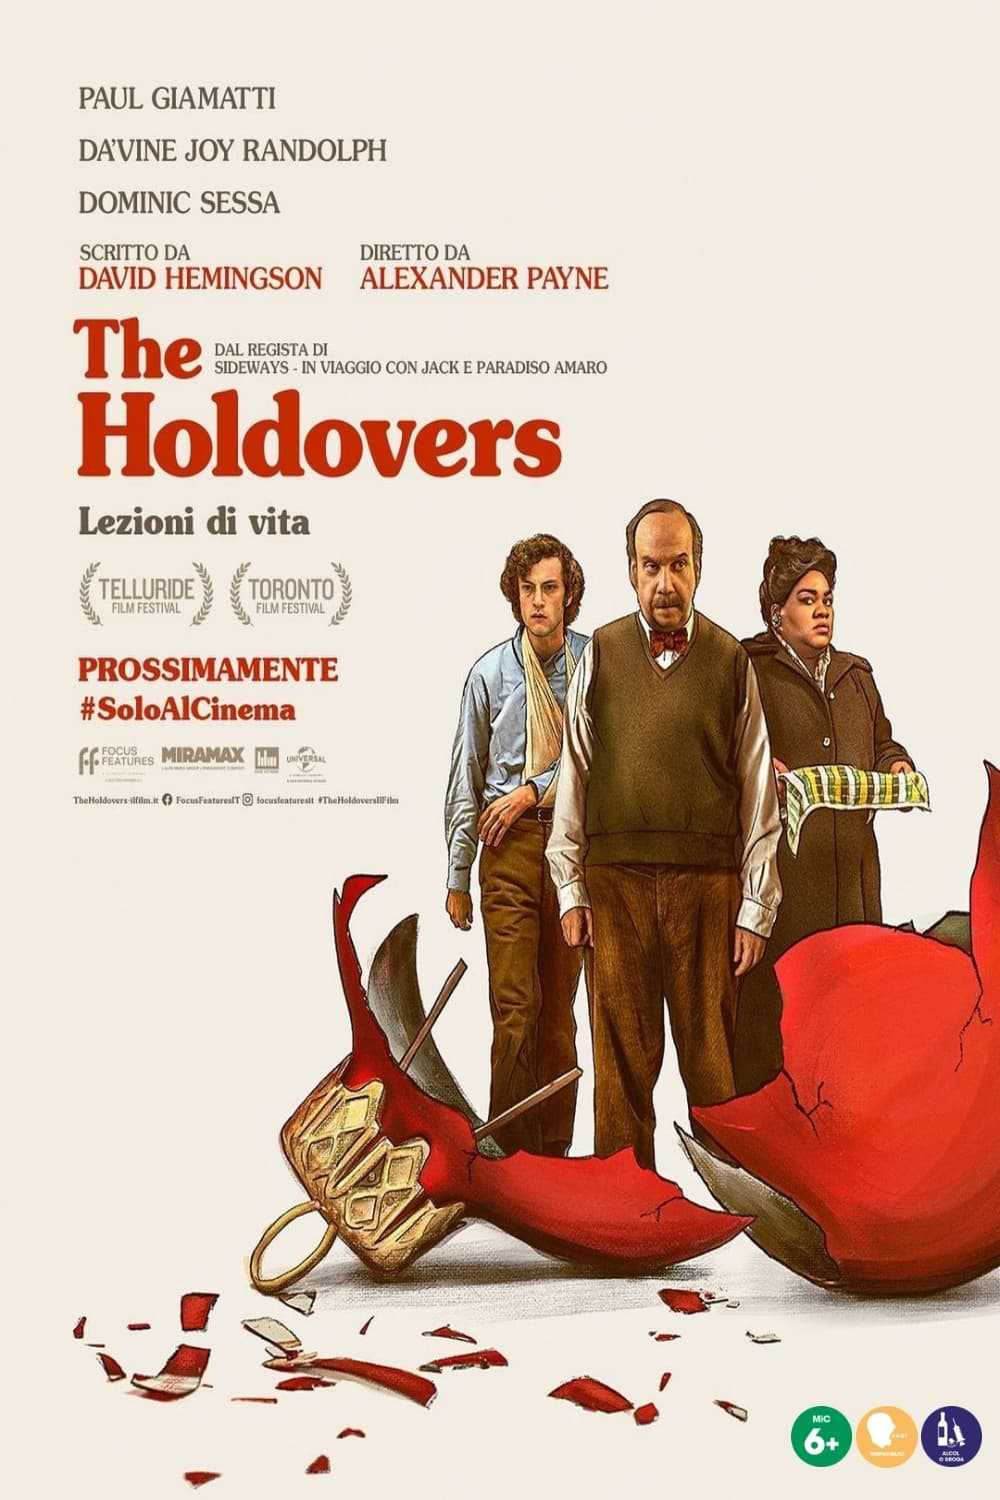 The Holdovers – Lezioni di vita in streaming